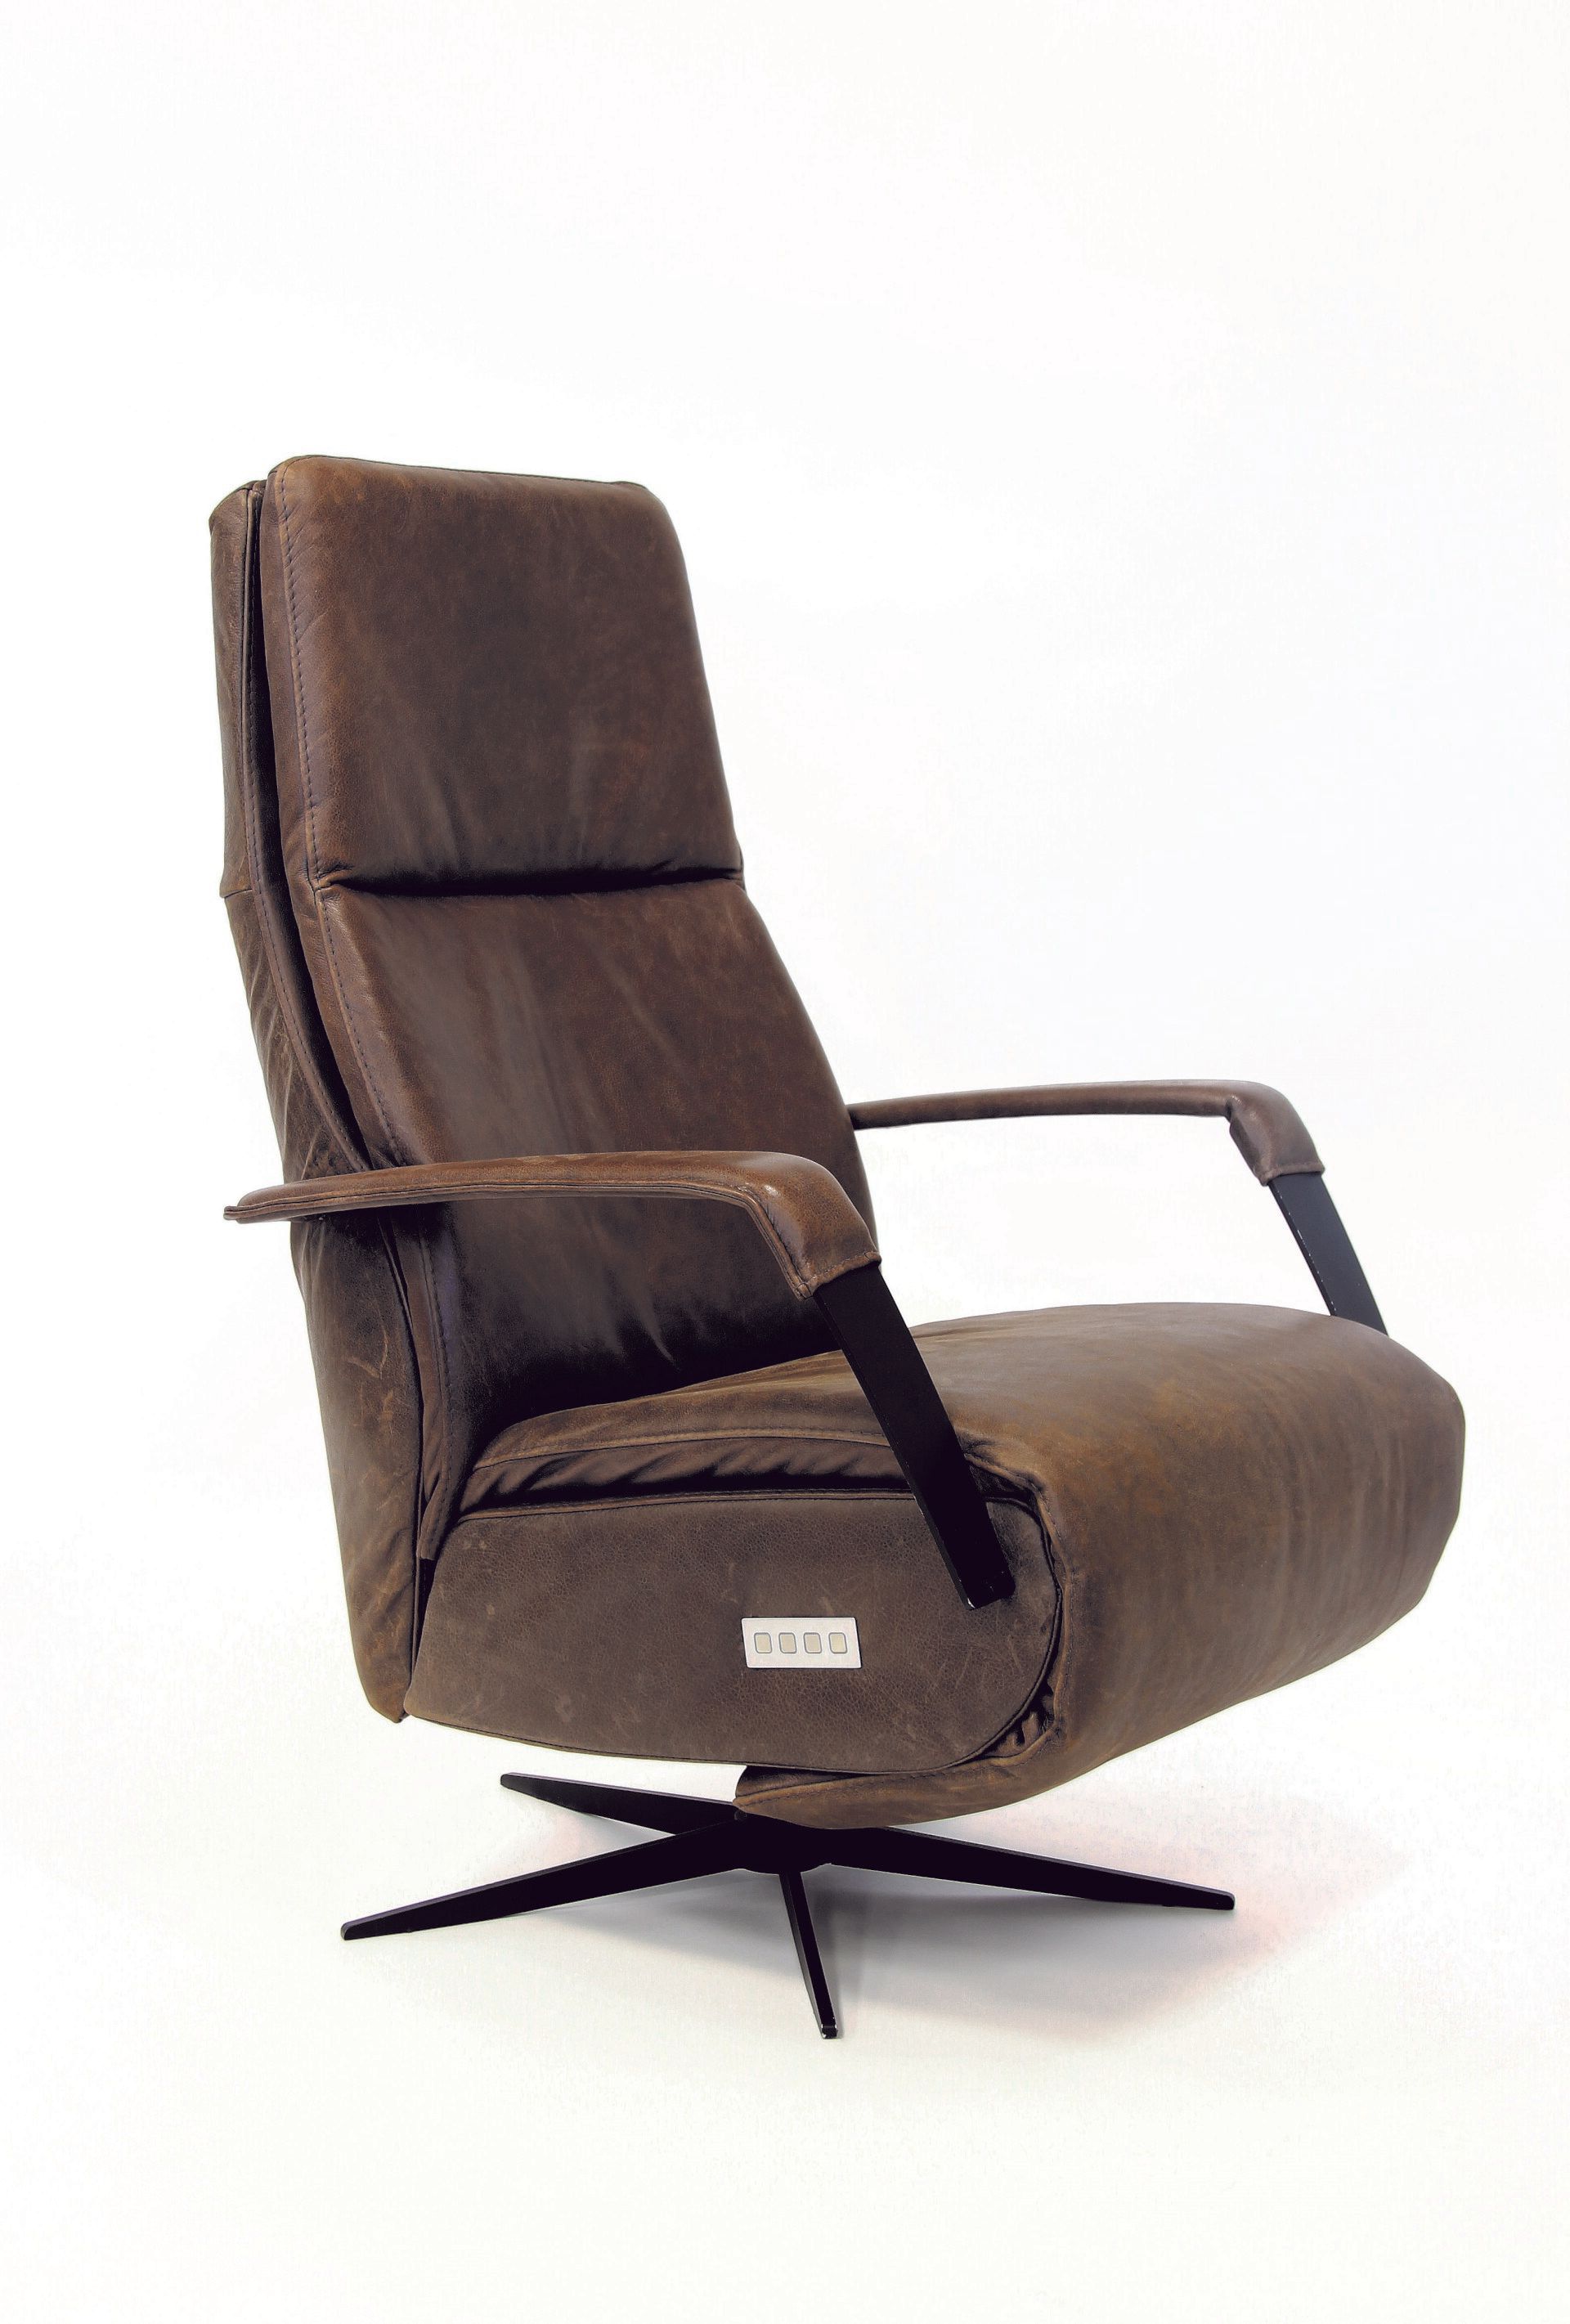 Chill-Line Jaxx Relaxfauteuil een stoere stoel die past in iedere woonkamer deze stoel is geproduceerd door DS Meubel